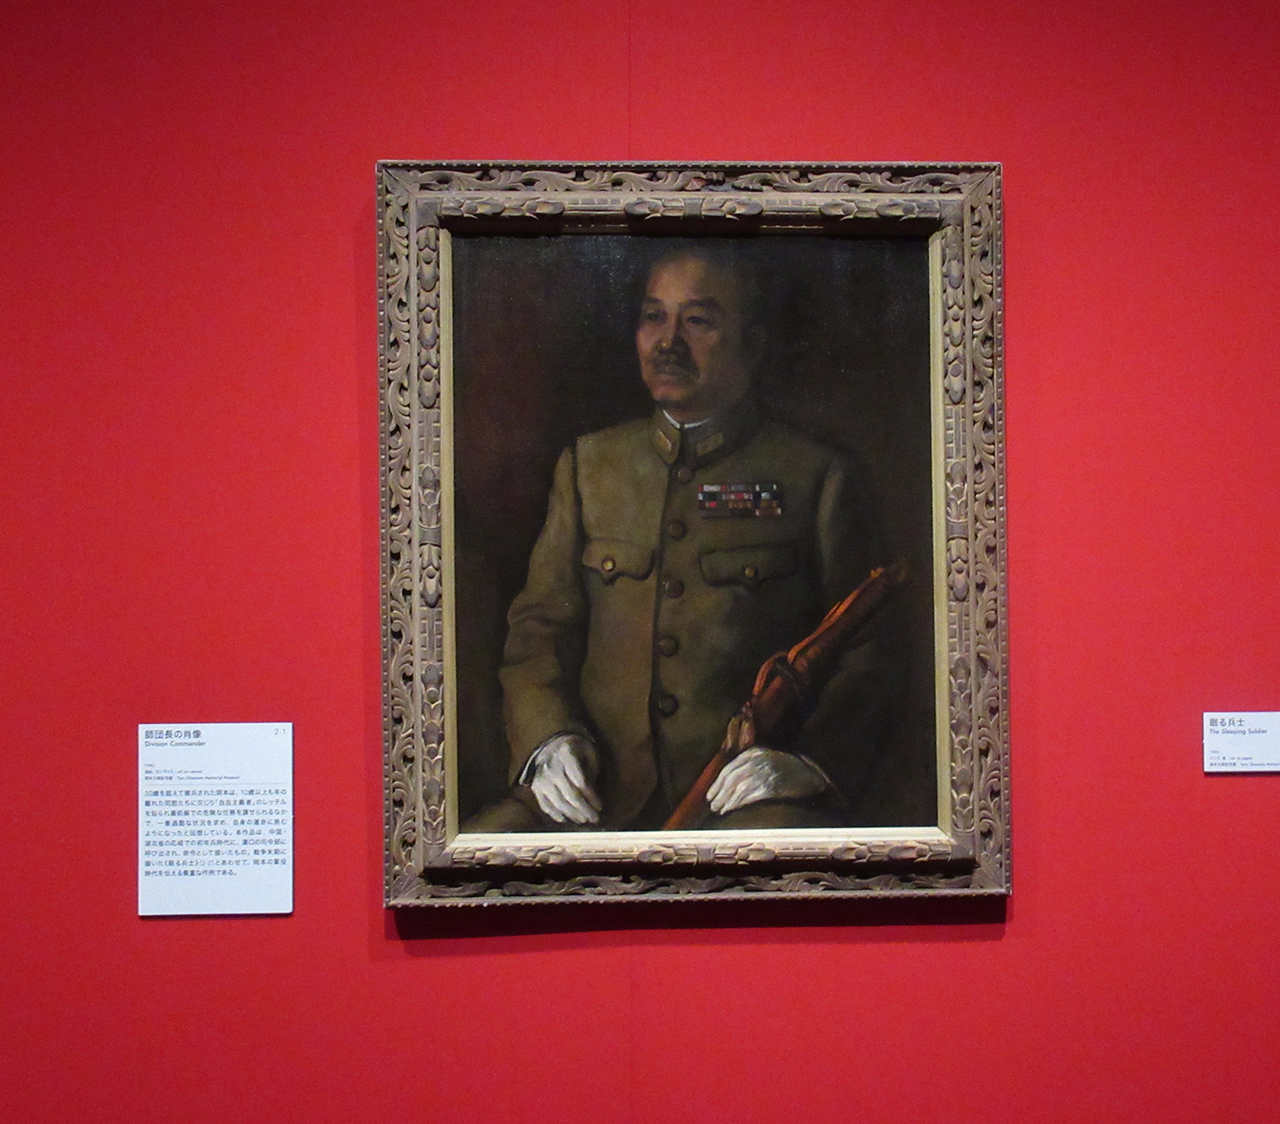 「師団長の肖像」1942年